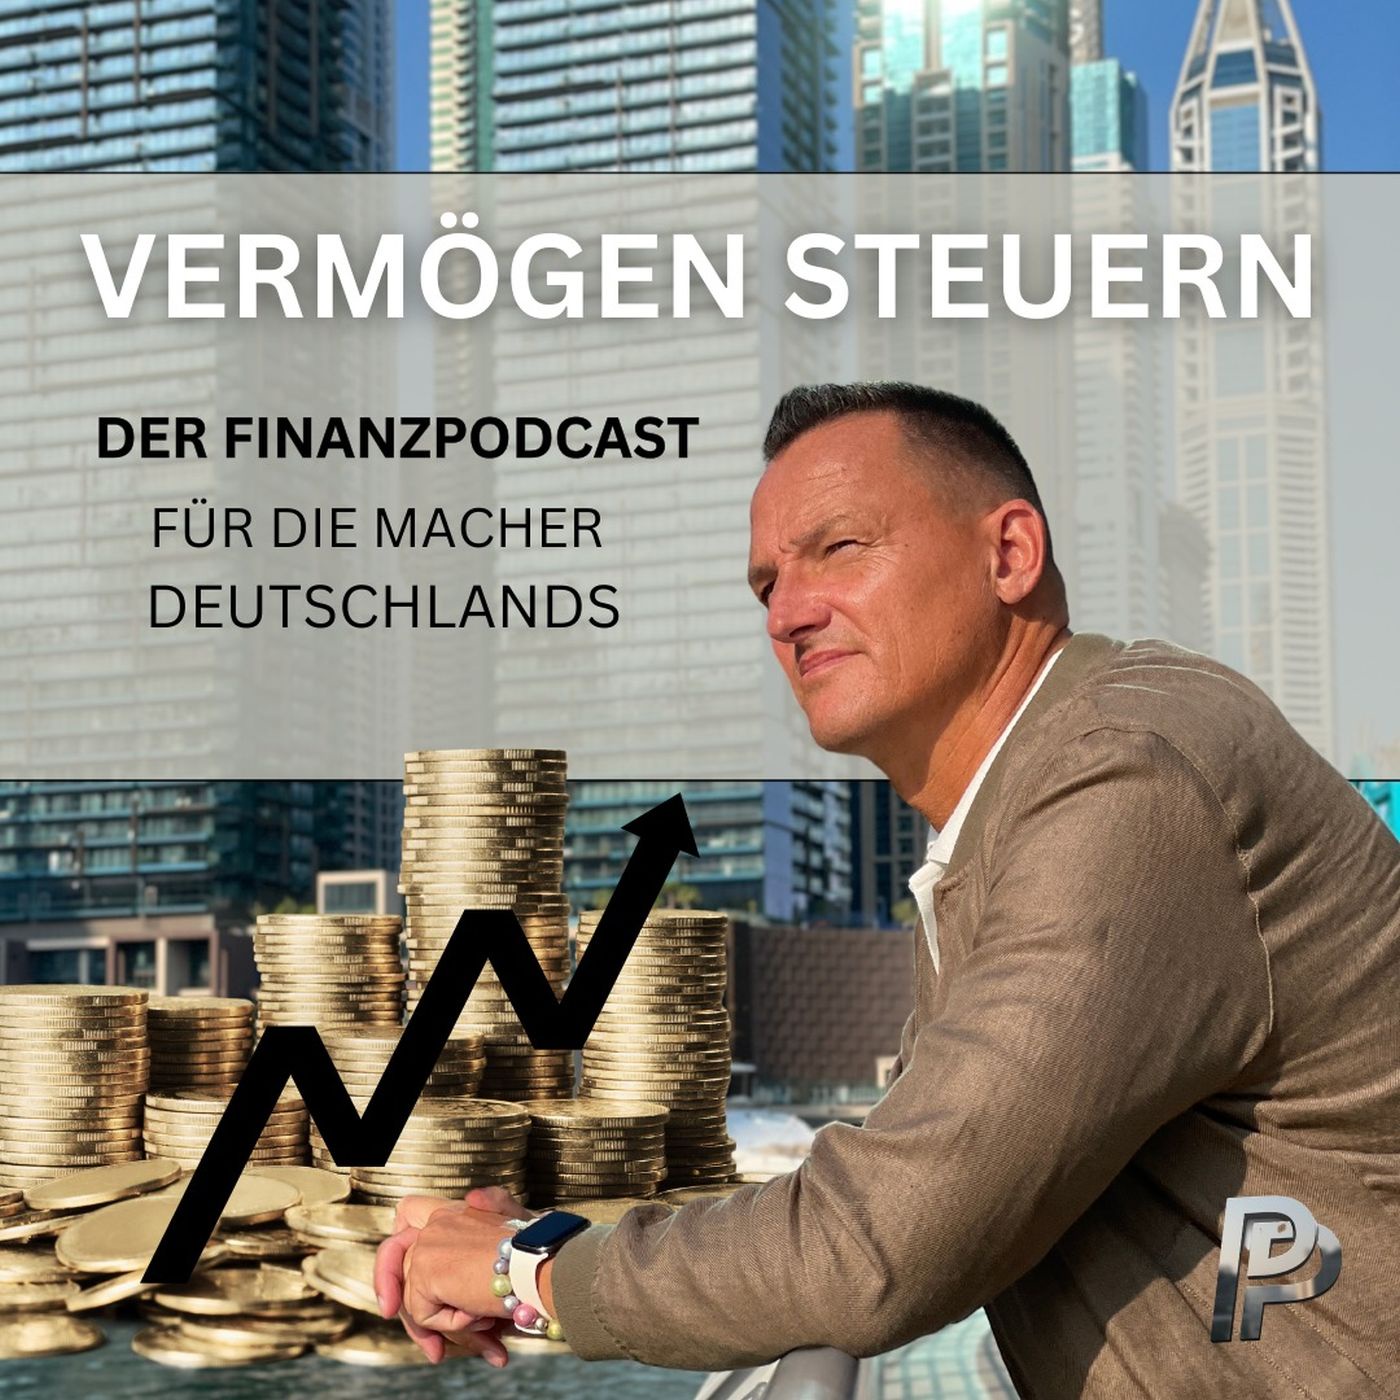 Vermögen steuern: der Finanzpodcast für die Macher Deutschlands